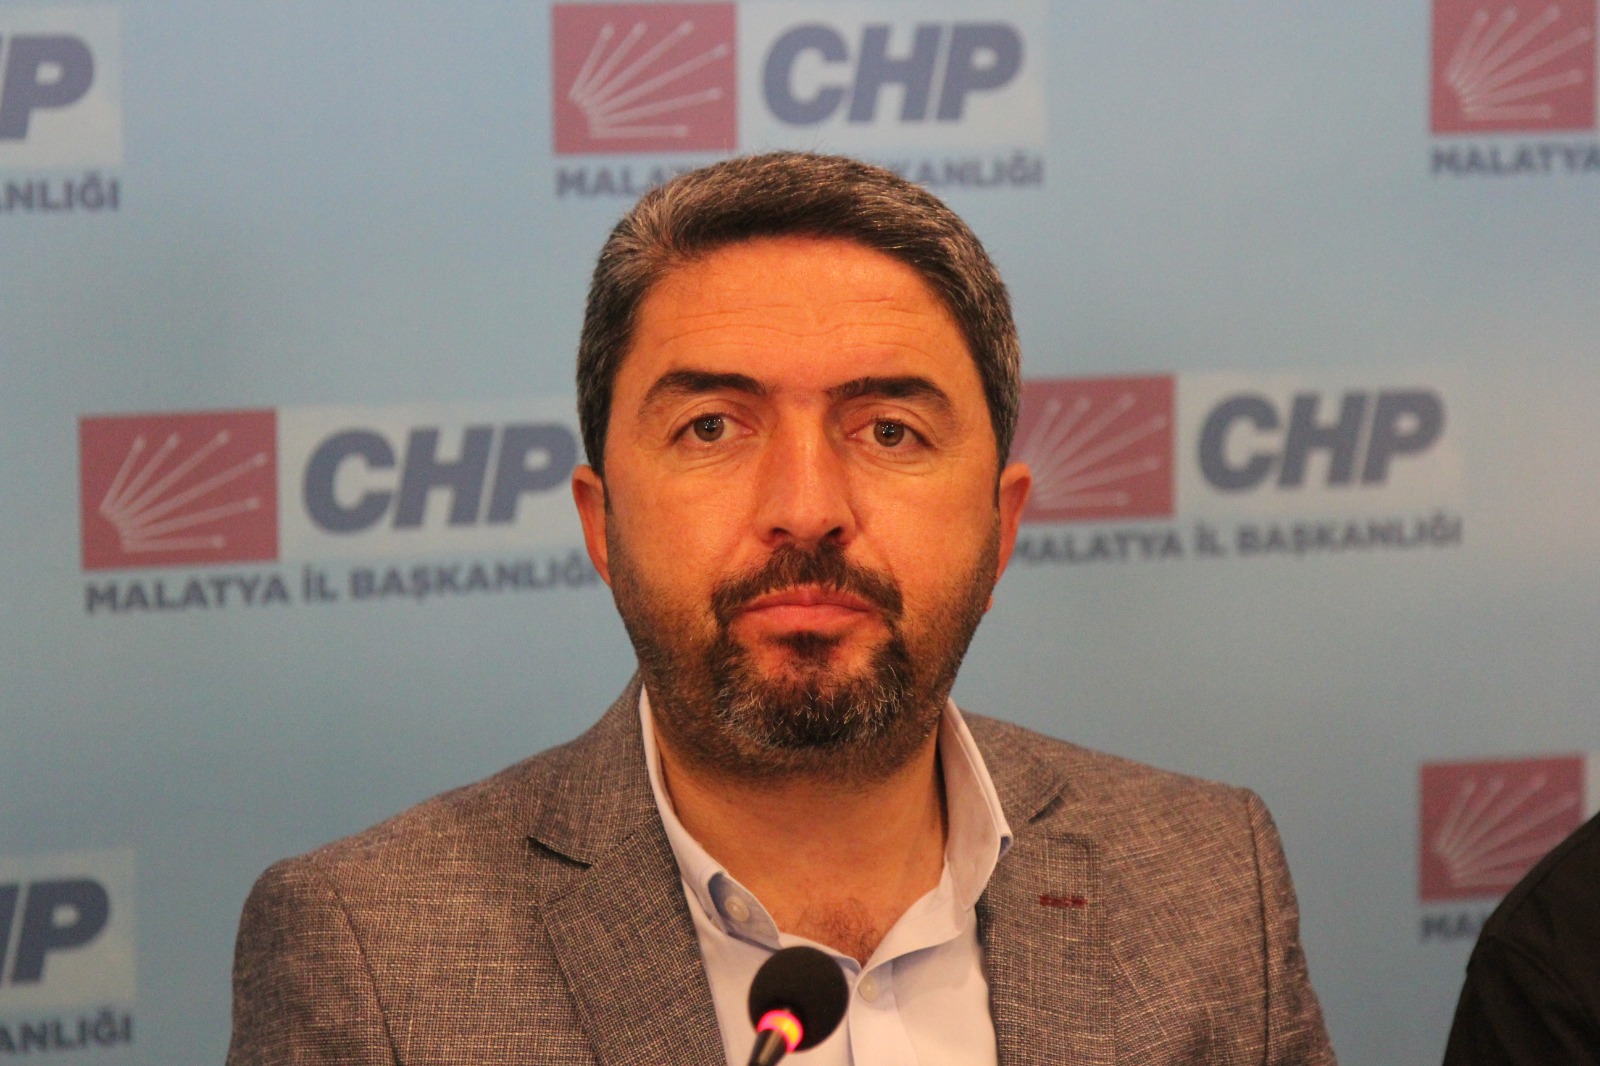 CHP İl Başkanı Enver Kiraz’dan İktidara Sert Eleştiri: “Vatandaşı Yine Oyalıyorlar”